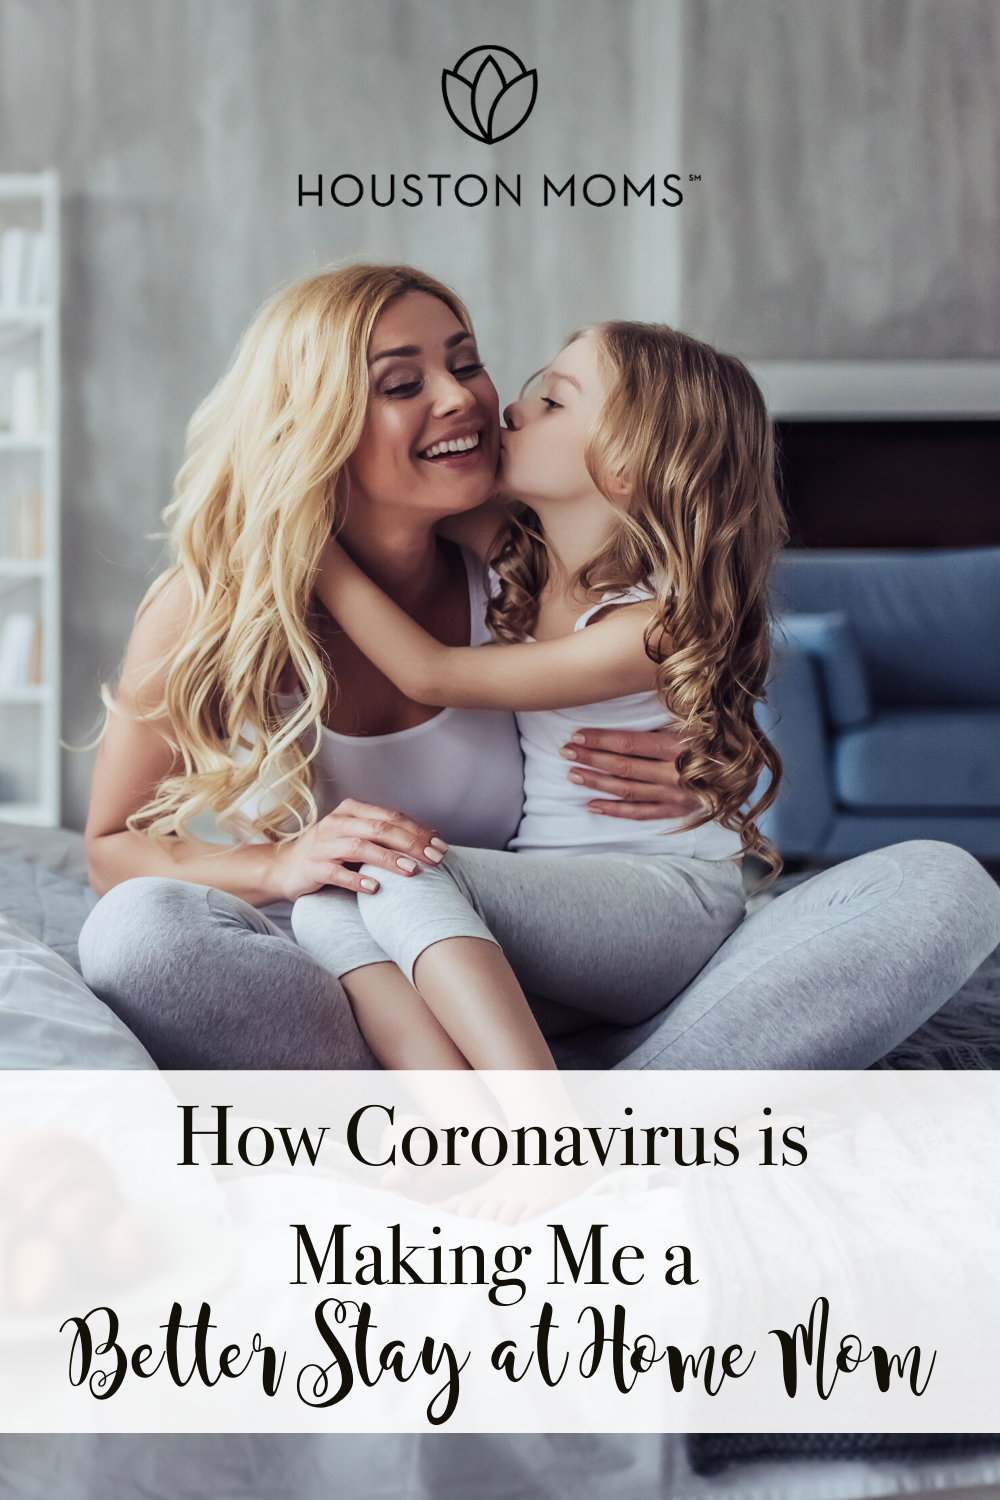 Houston Moms "How Coronavirus is Making Me a Better Stay at Home Mom" #houstonmoms #houstonmomsblog #momsaroundhouston